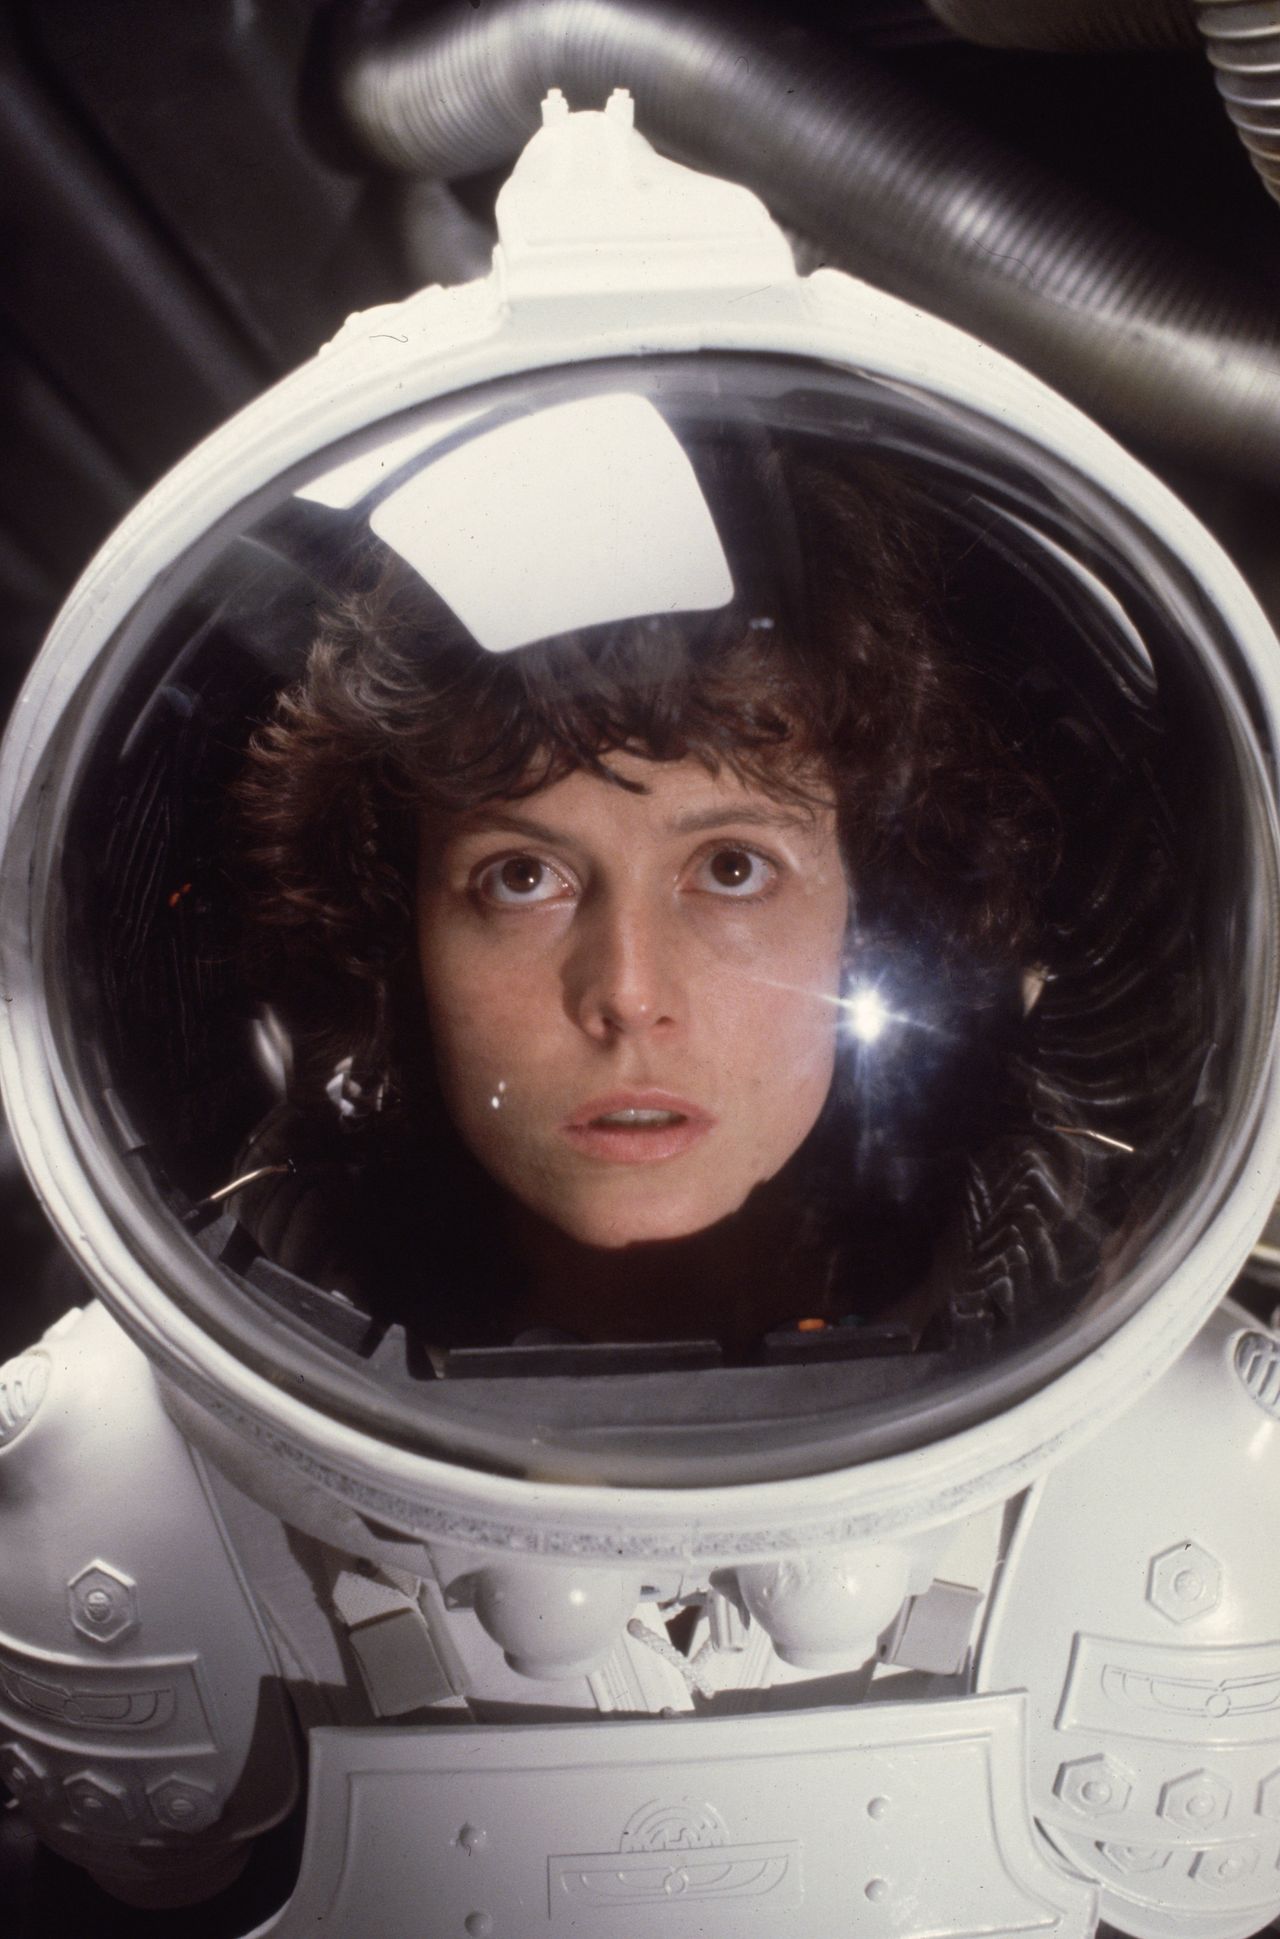 Sigourney Weaver as Ripley in Alien in 1979